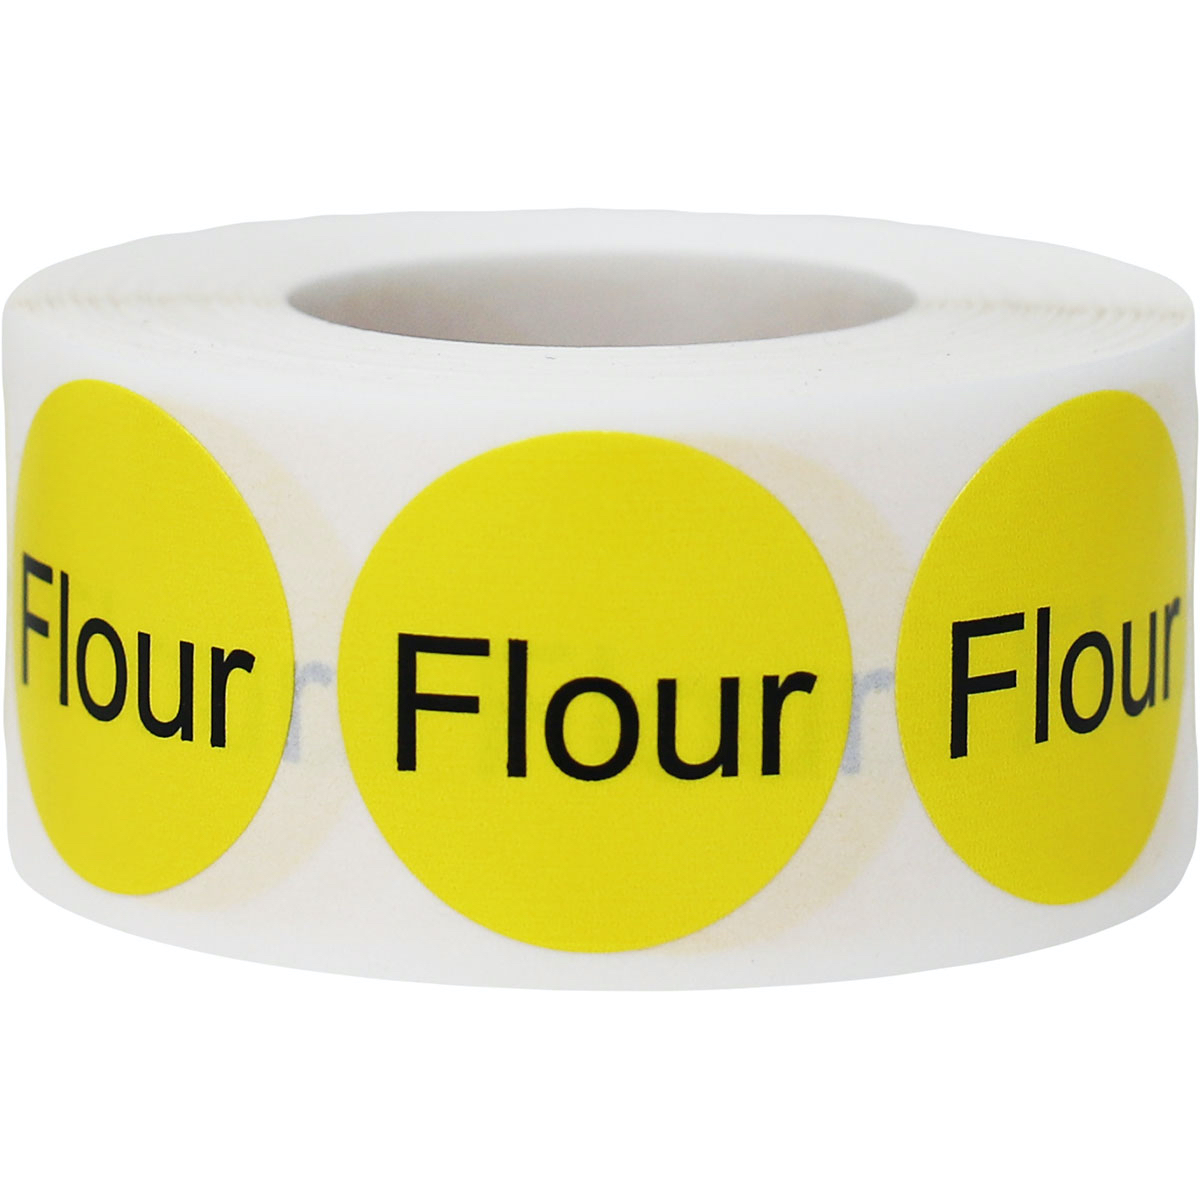 flour-deli-labels-instocklabels